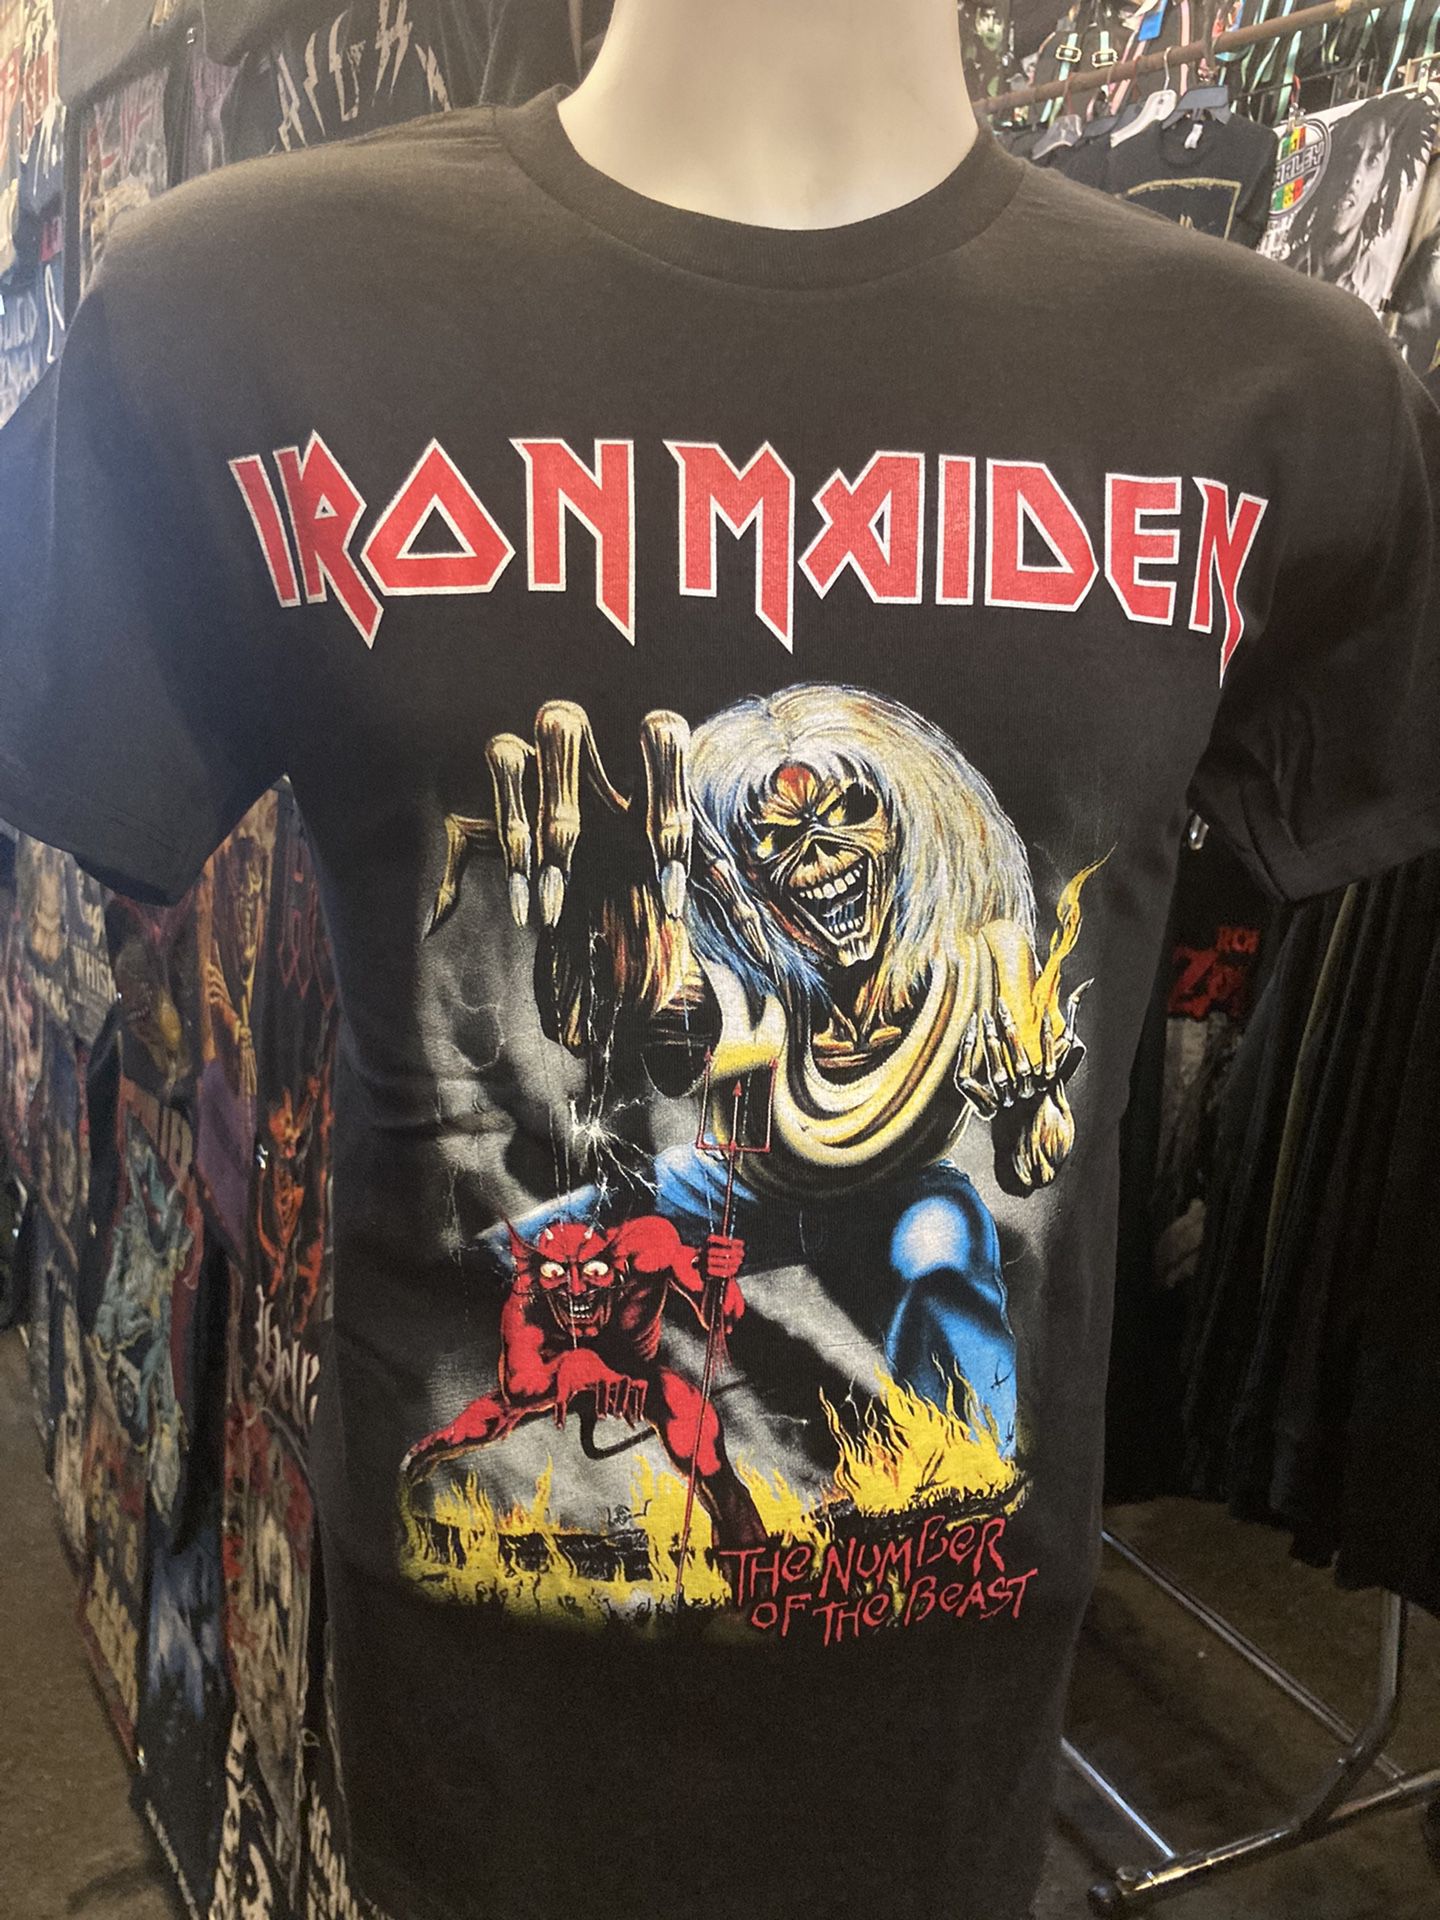 Iron Maiden Band Tee